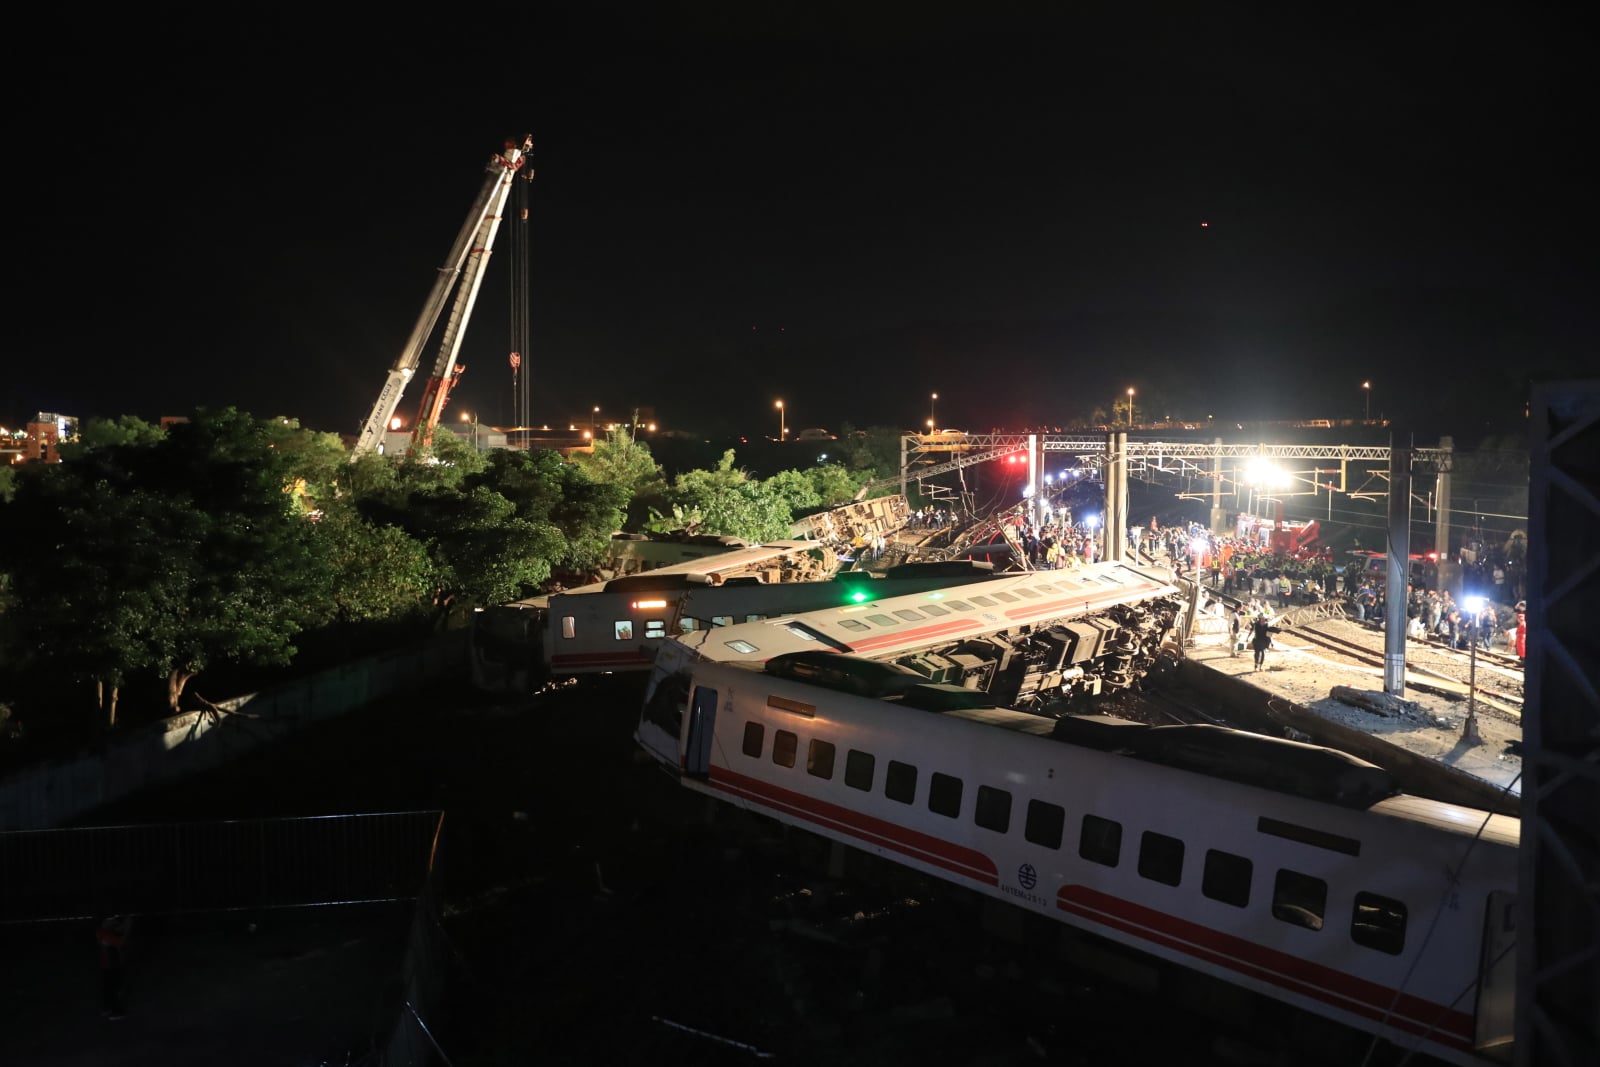 Katastrofa kolejowa na Tajwanie
EPA/RITCHIE B. TONGO 